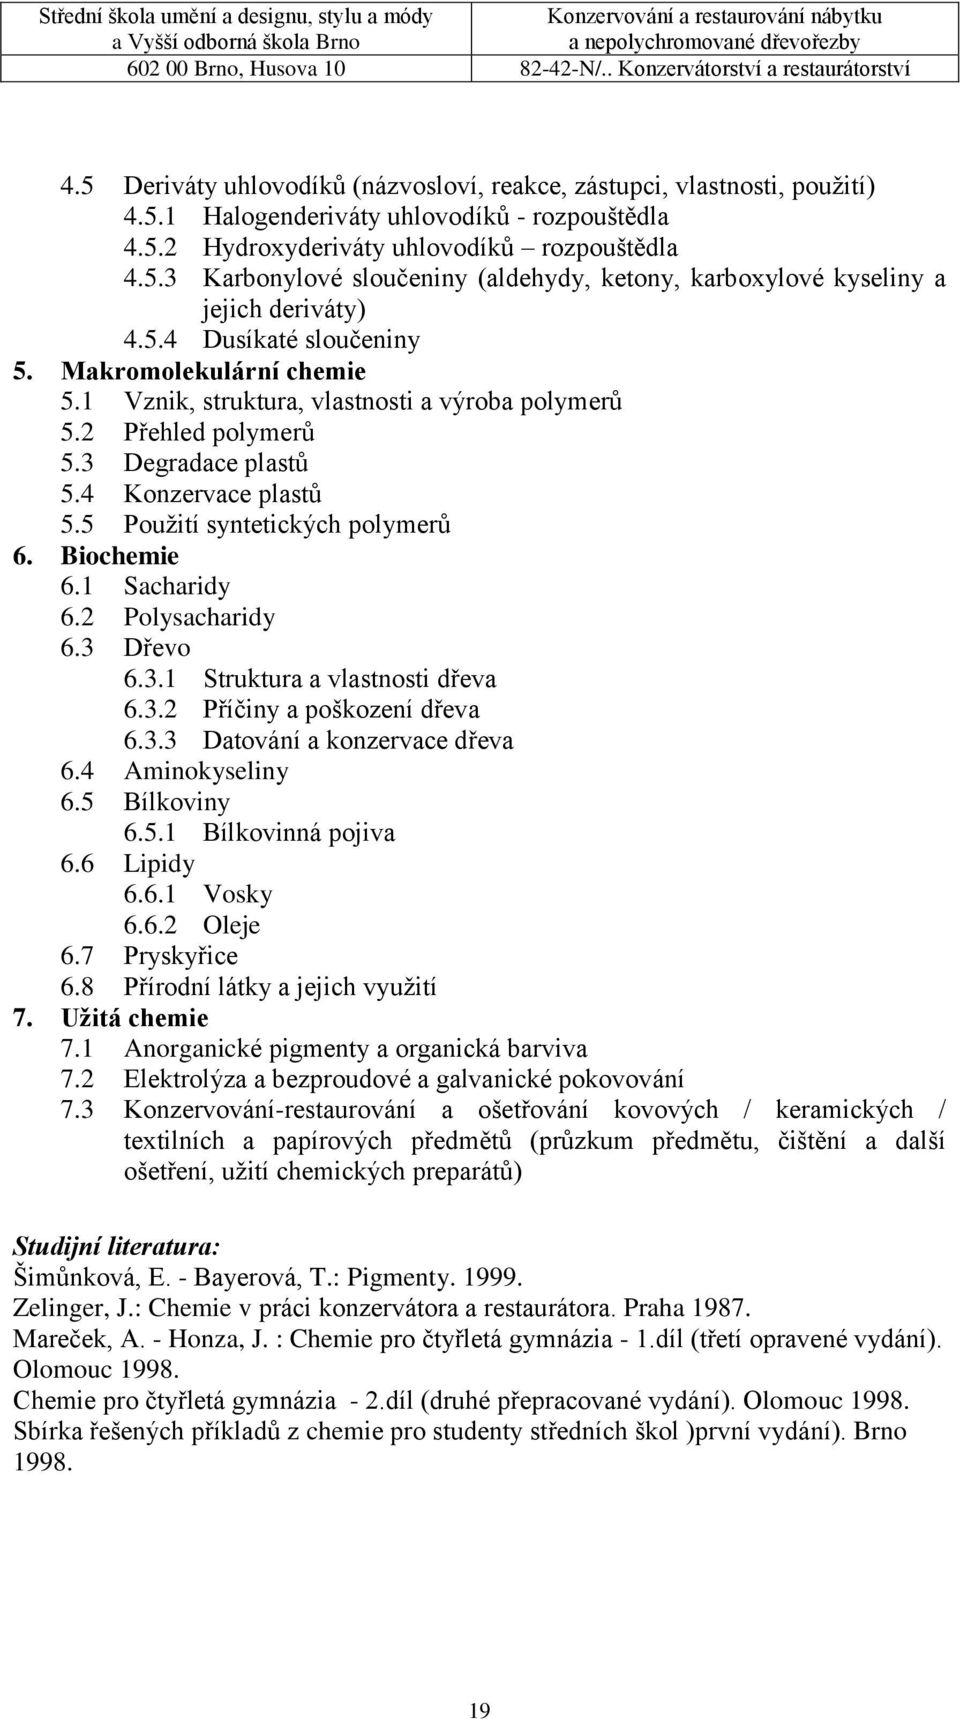 5 Použití syntetických polymerů 6. Biochemie 6.1 Sacharidy 6.2 Polysacharidy 6.3 Dřevo 6.3.1 Struktura a vlastnosti dřeva 6.3.2 Příčiny a poškození dřeva 6.3.3 Datování a konzervace dřeva 6.